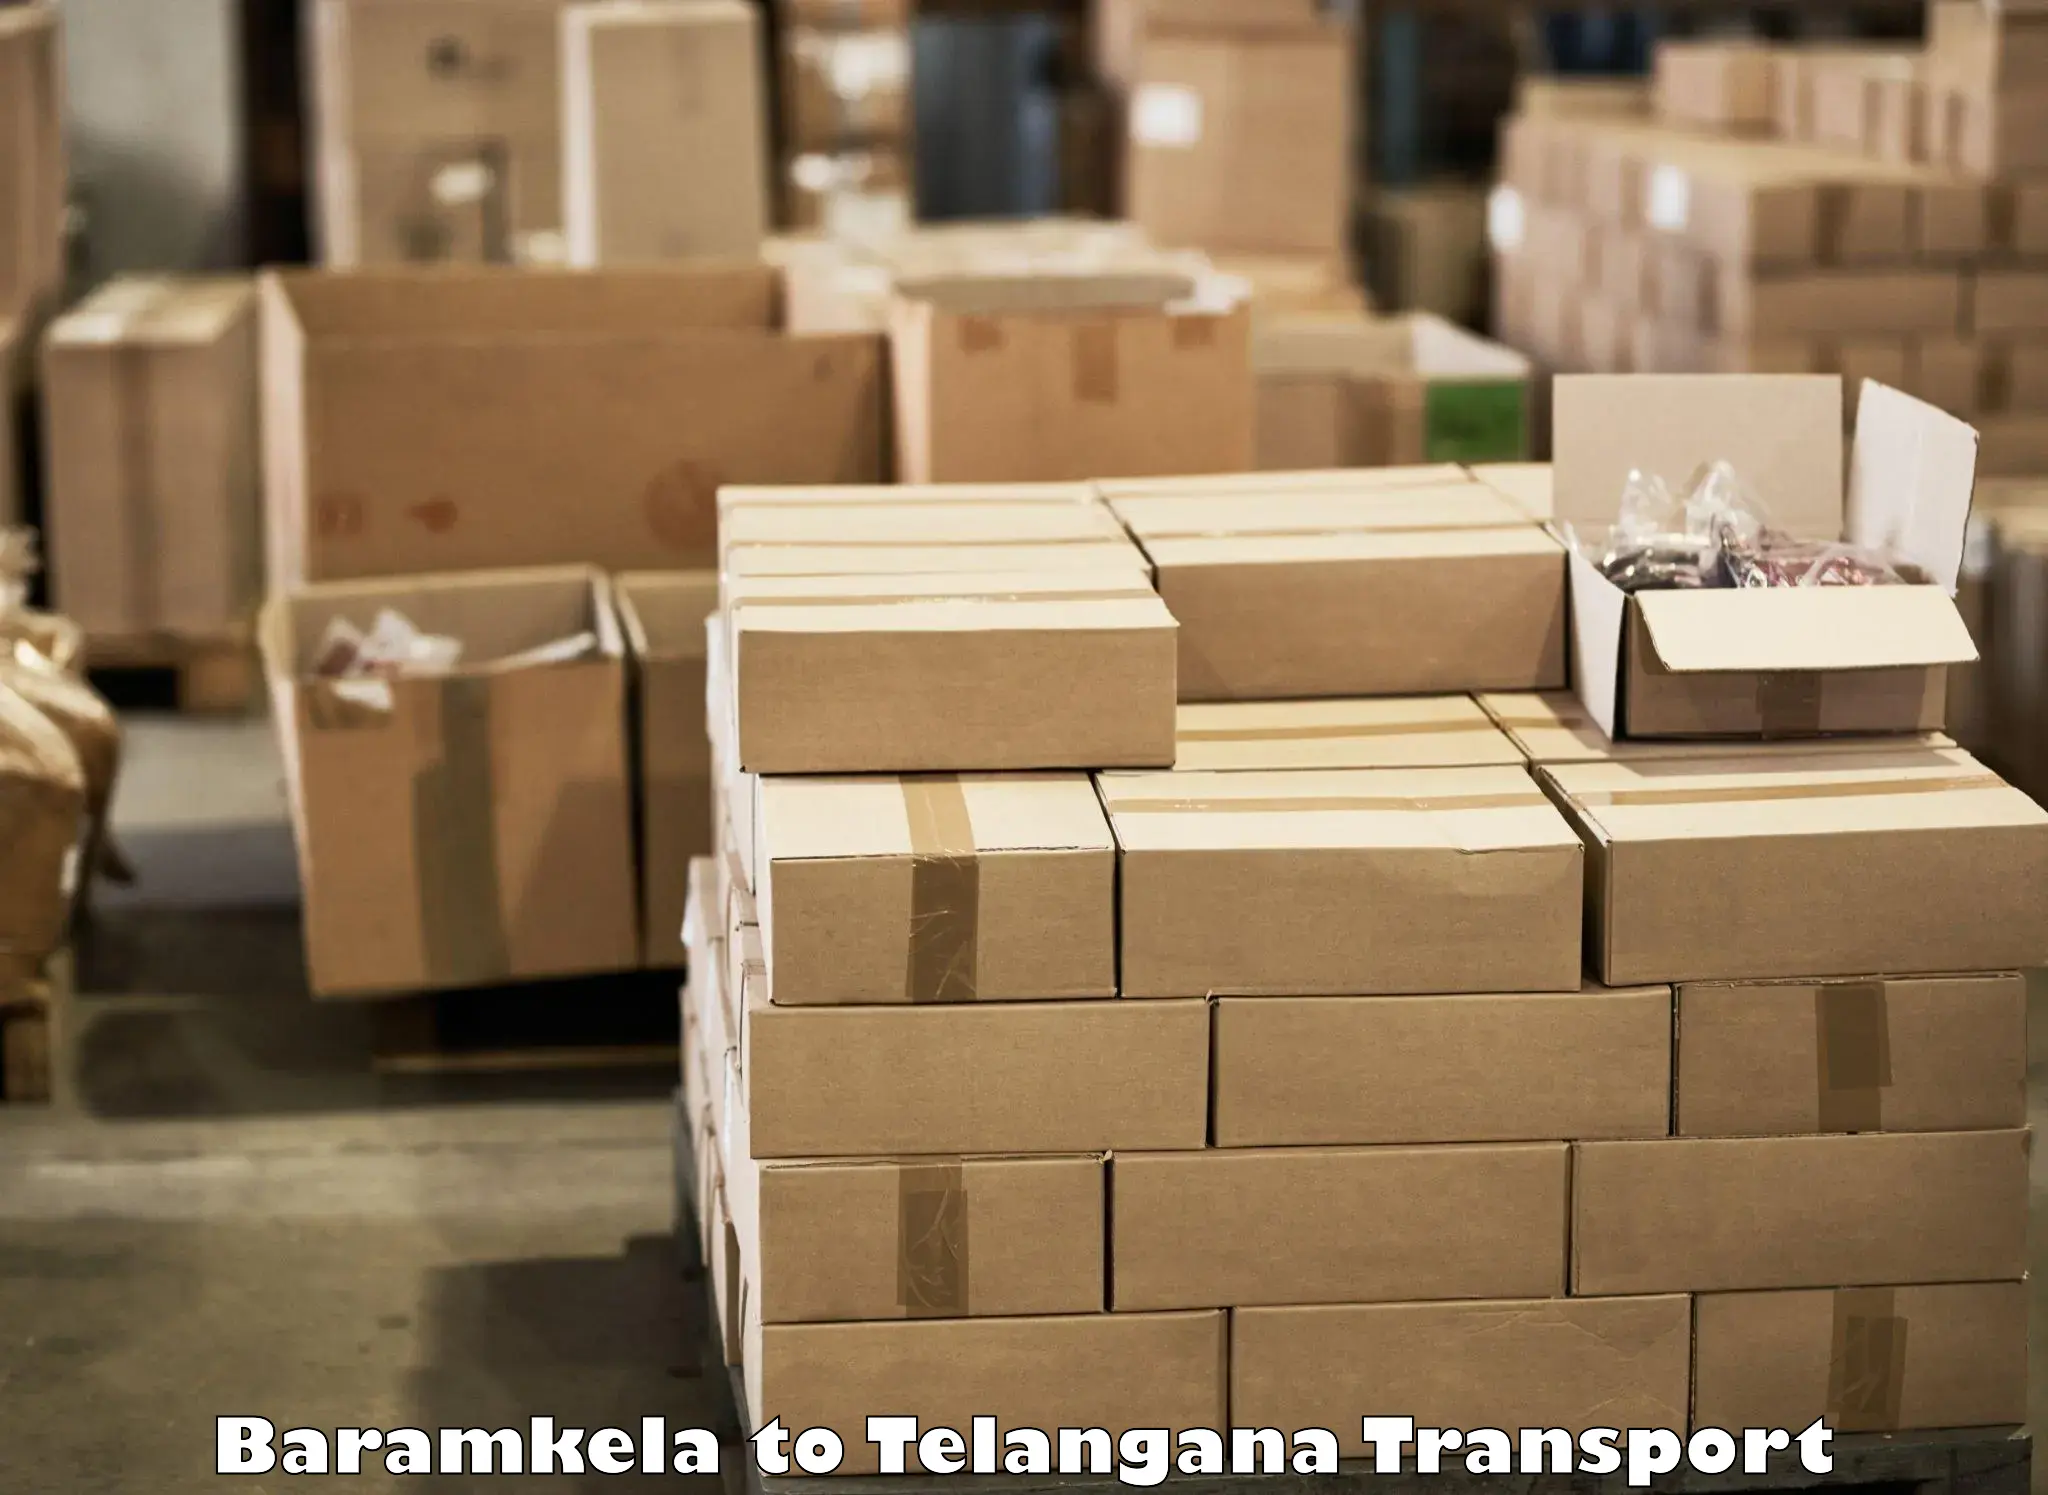 Express transport services in Baramkela to Kothakota